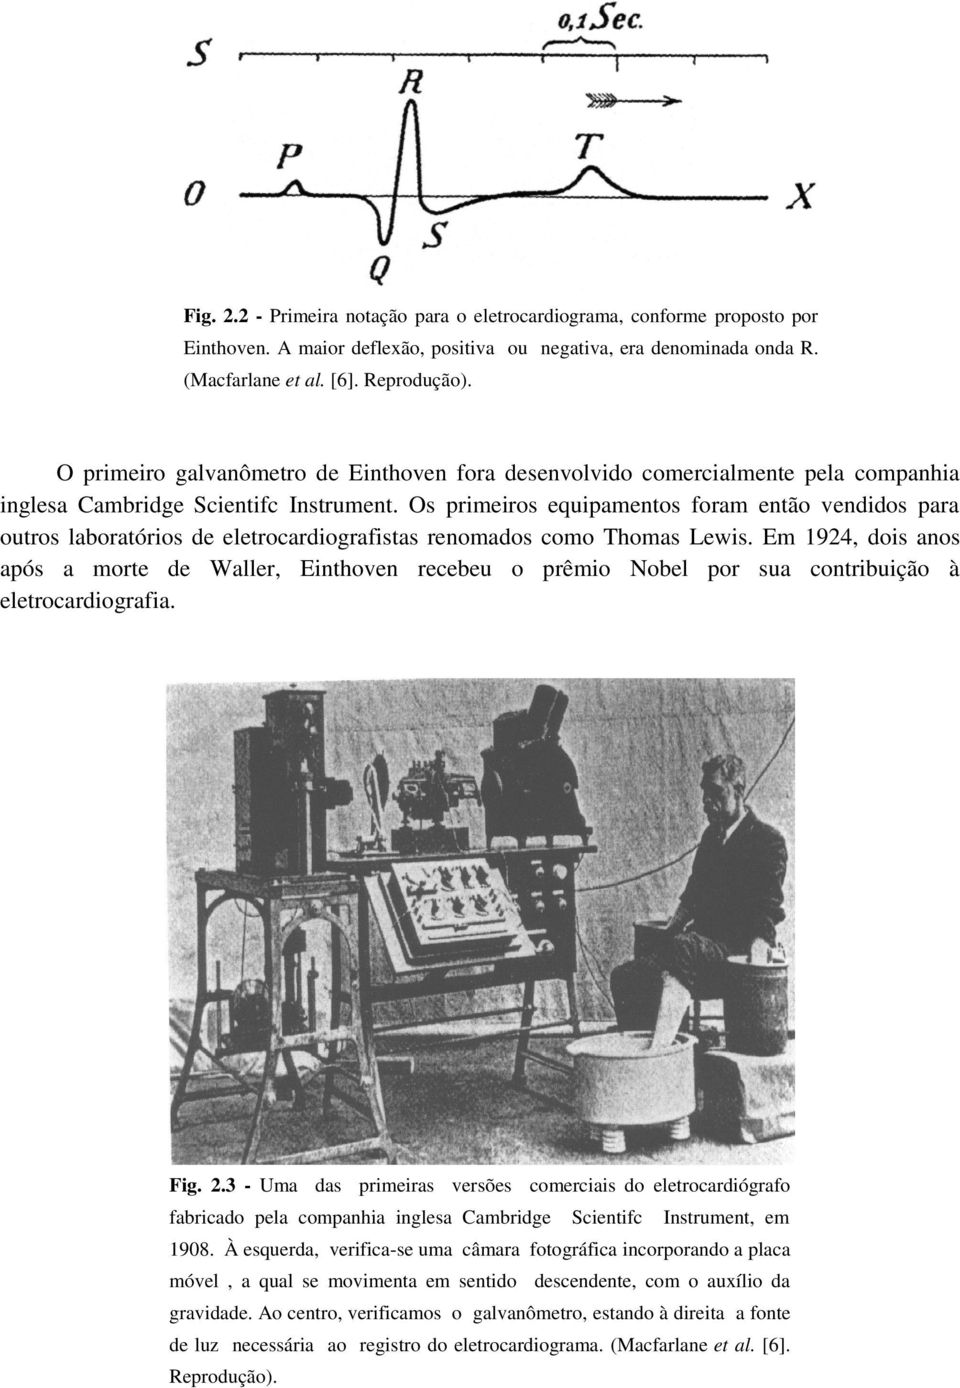 eletrocardiografistas renomados como Thomas Lewis Em 1924, dois anos após a morte de Waller, Einthoven recebeu o prêmio Nobel por sua contribuição à eletrocardiografia Fig 23 - Uma das primeiras